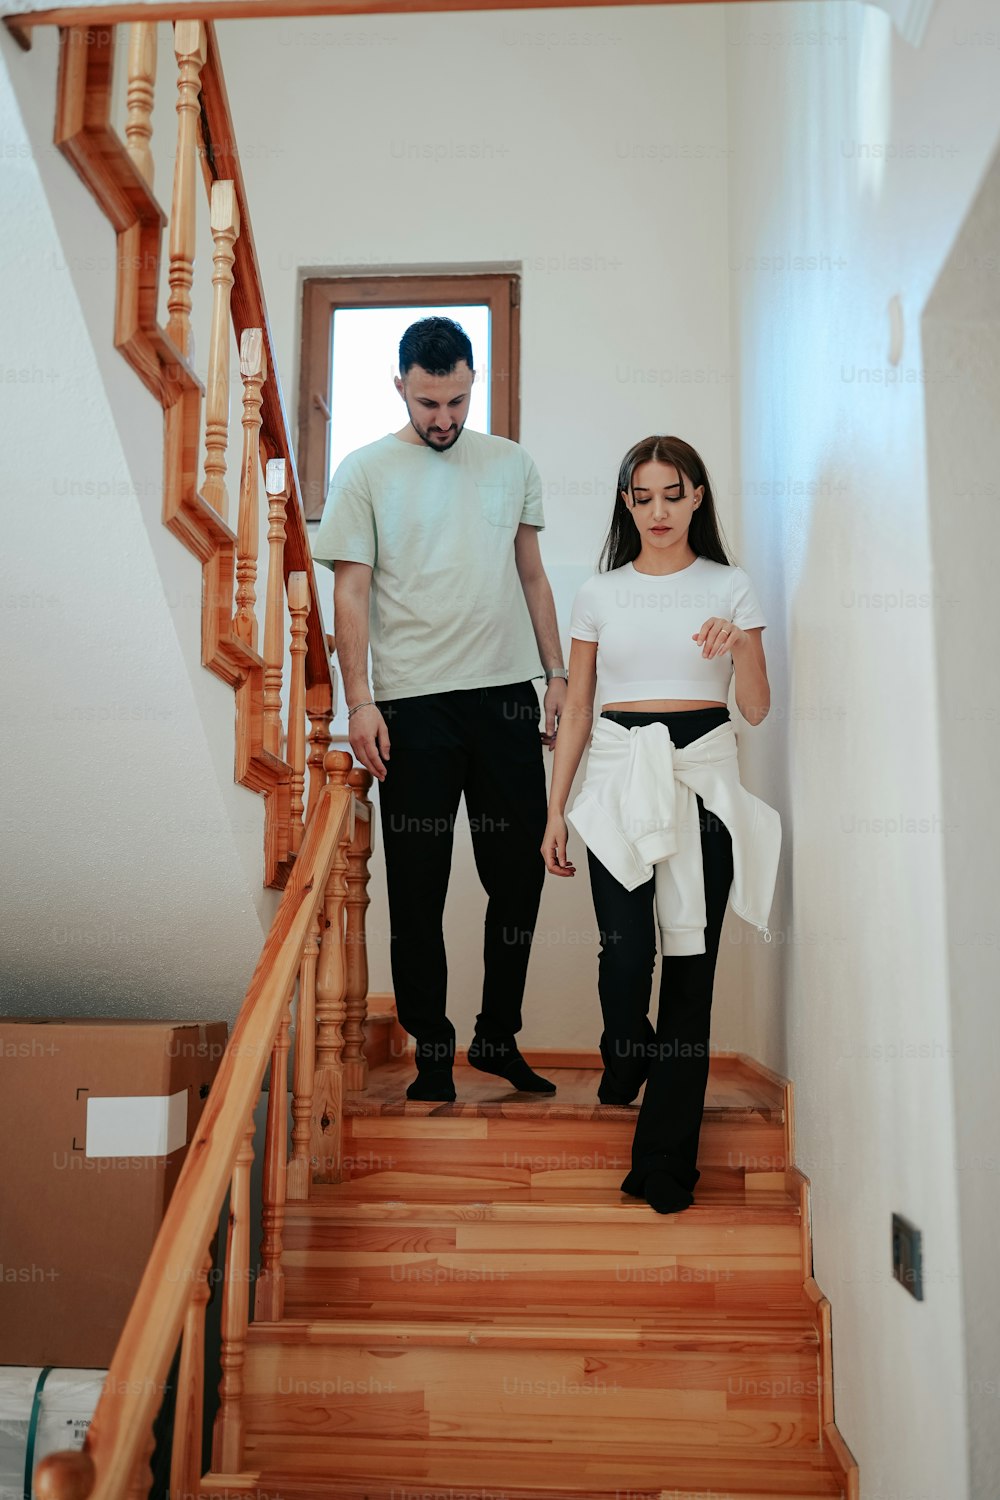 Ein Mann und eine Frau gehen eine Treppe hinunter